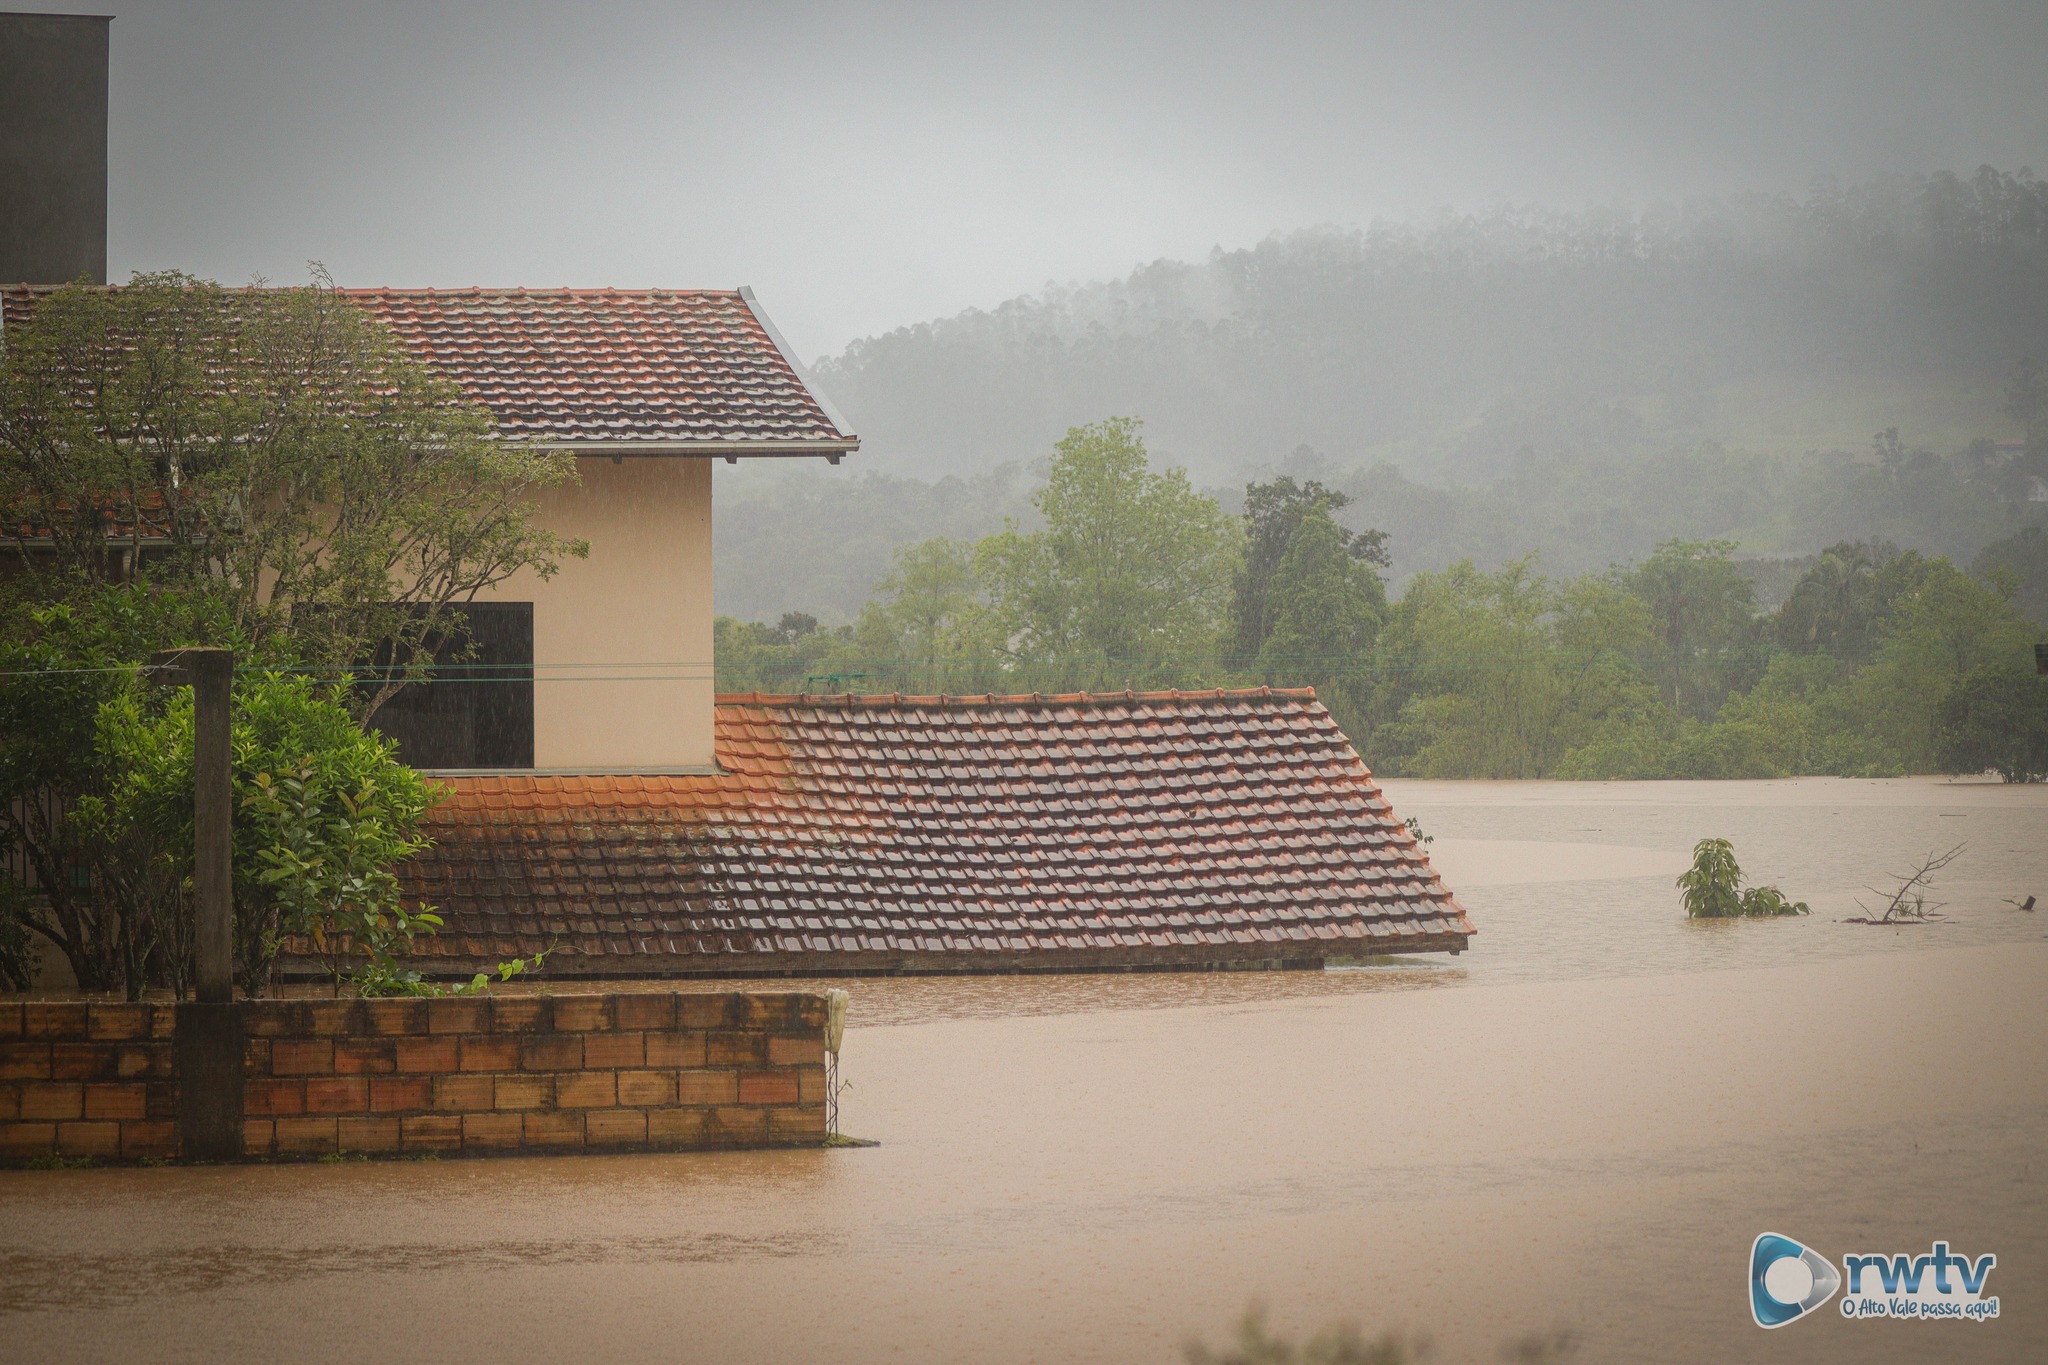 Saúde alerta para o risco do contato com a água de alagamentos e enchentes em Santa Catarina